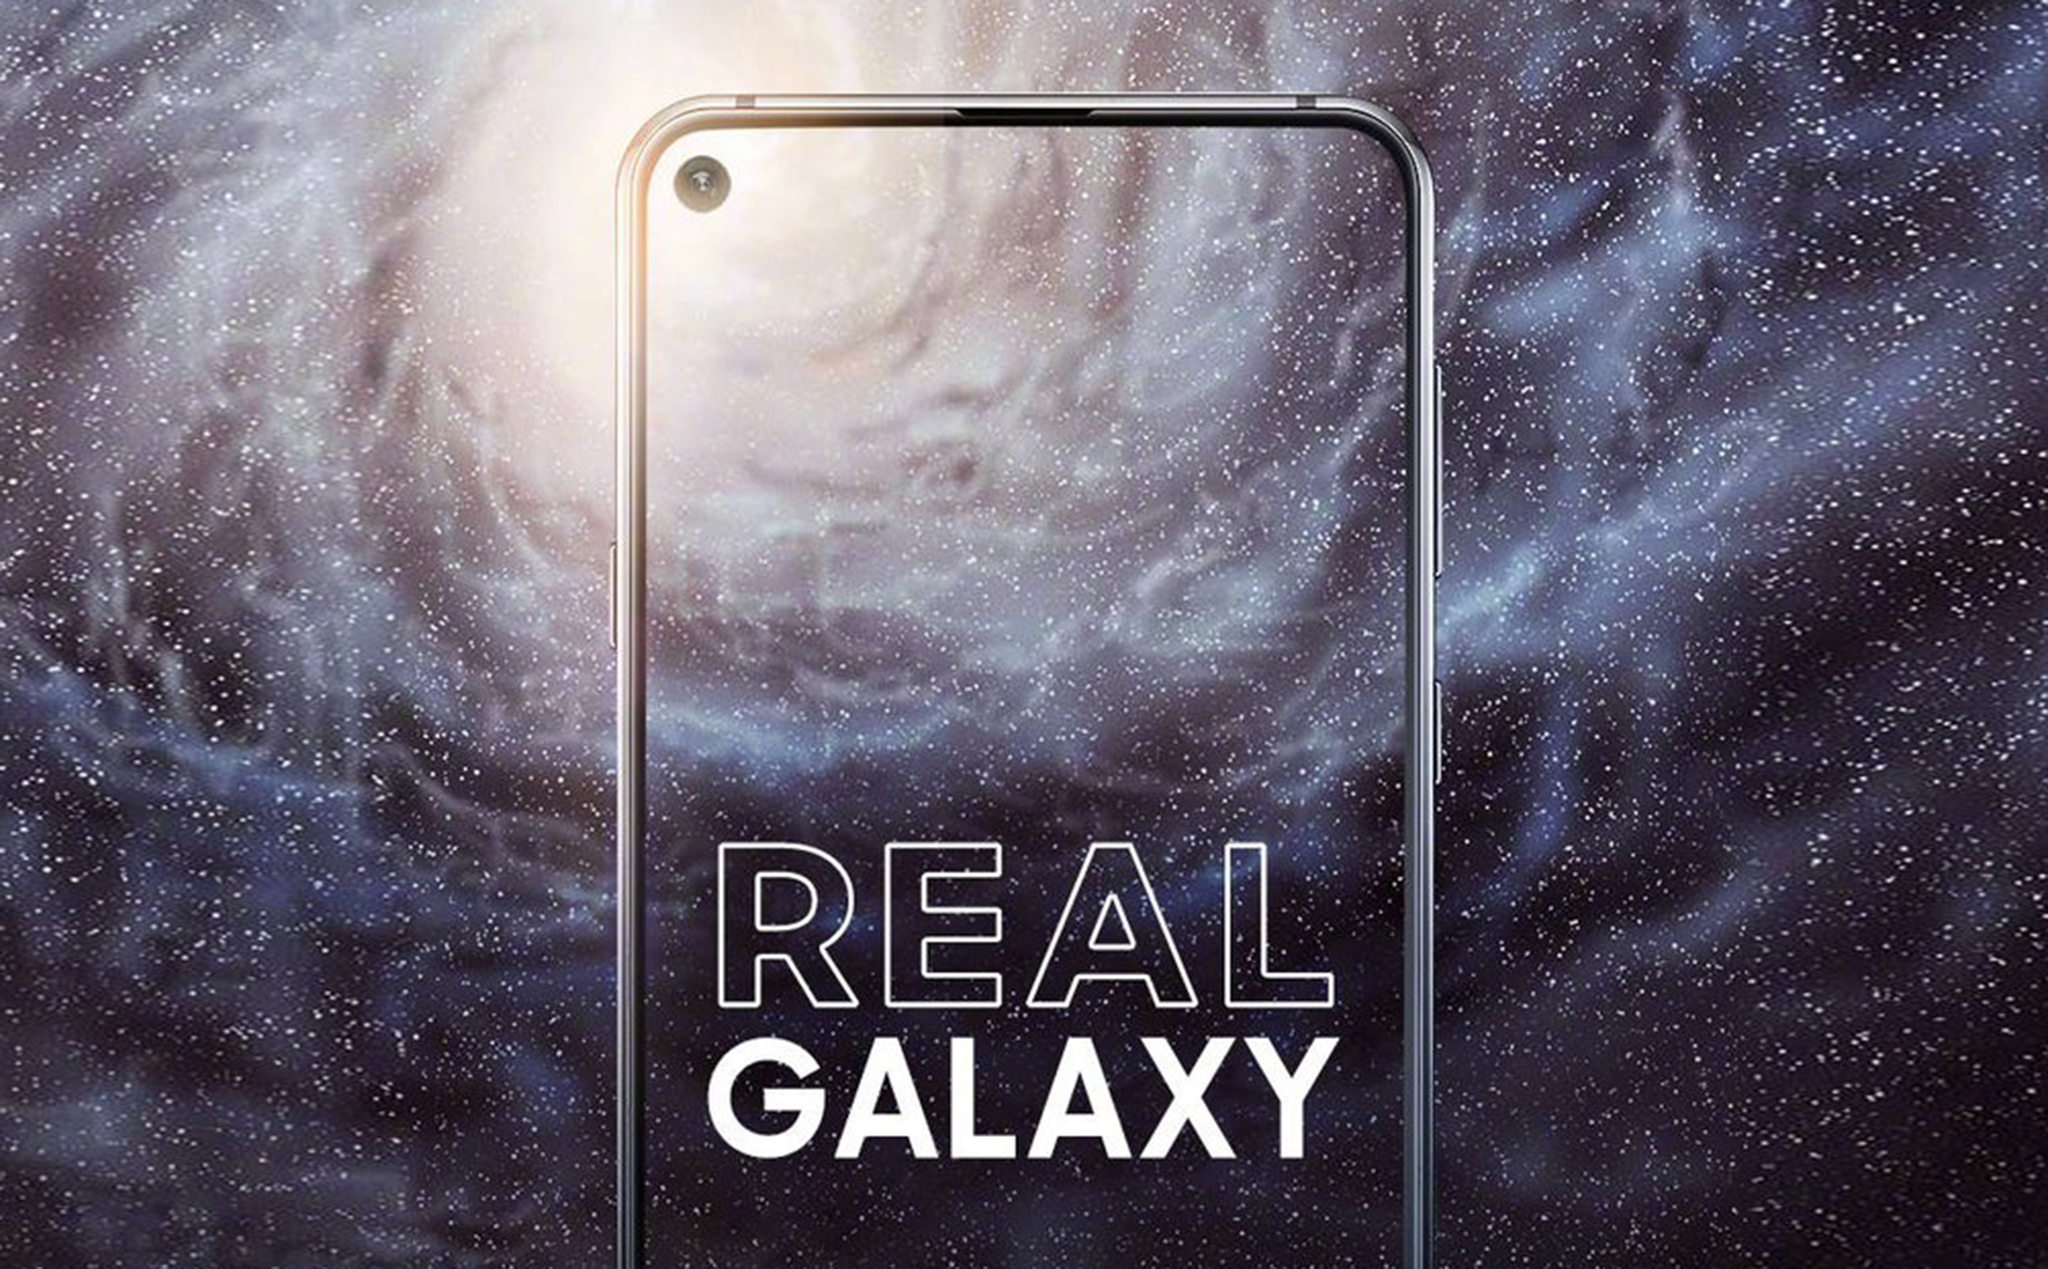 Galaxy A8s sẽ ra mắt vào ngày 10/12: smartphone đầu tiên trên thế giới có màn hình "khoét lỗ"